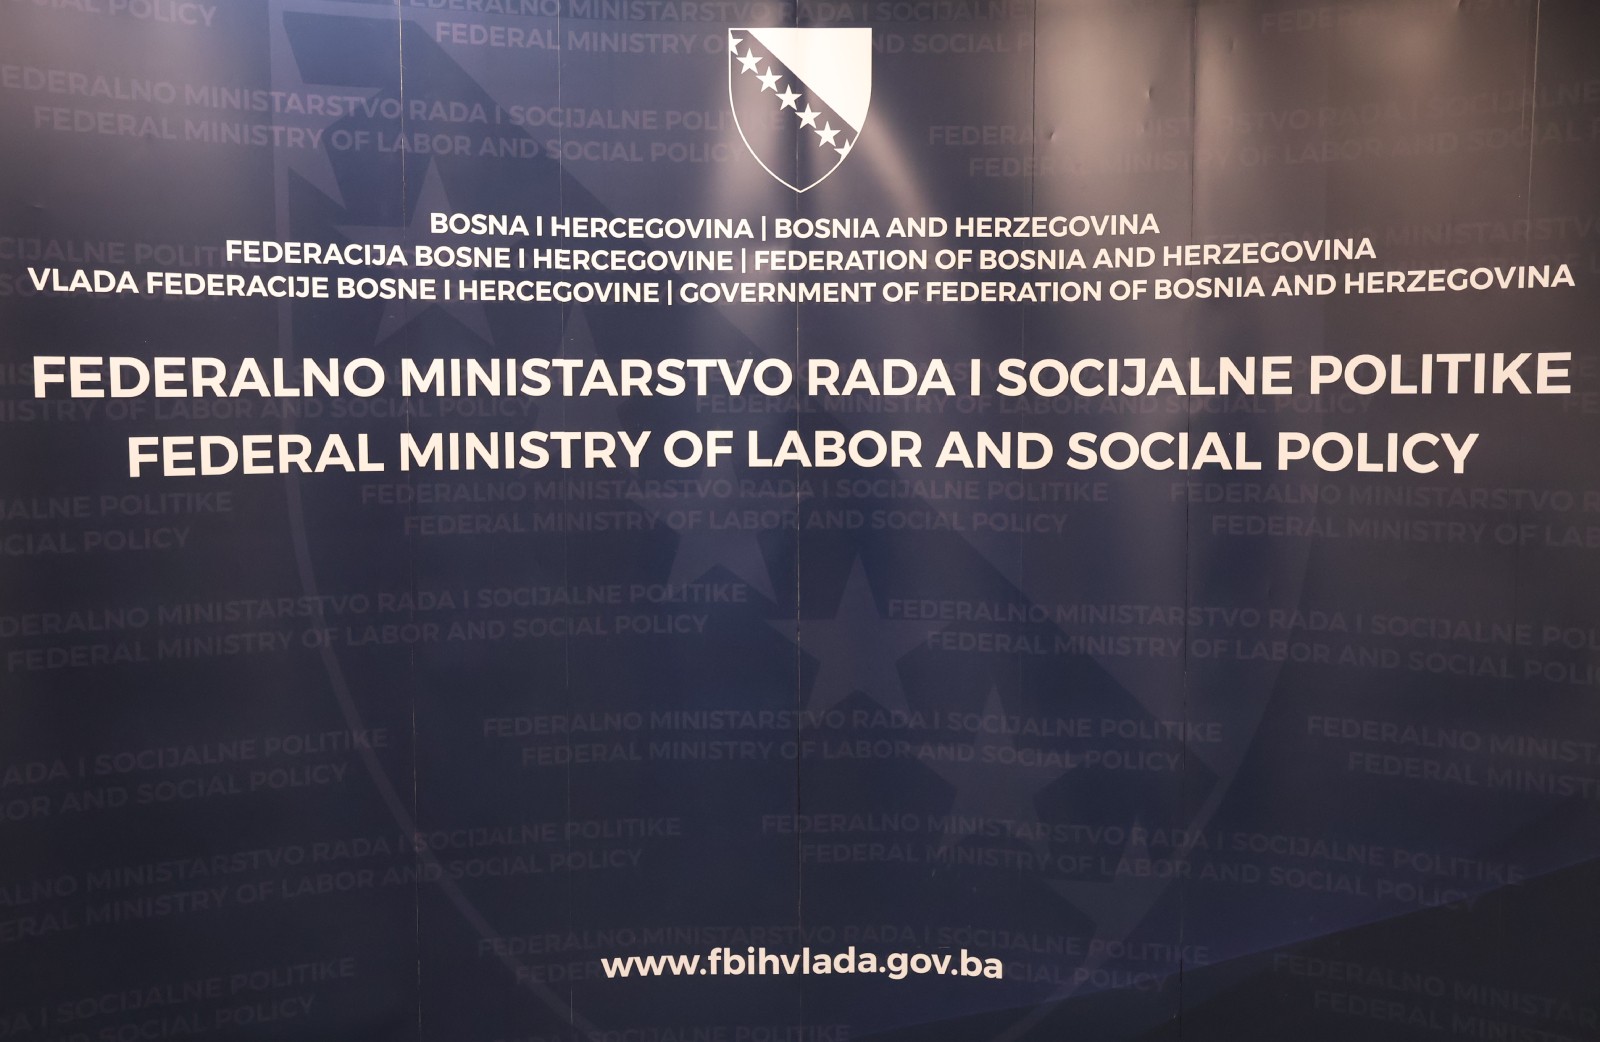 Federalno ministarstvo rada i socijalne politike dobilo pozitivan revizorski izvještaj